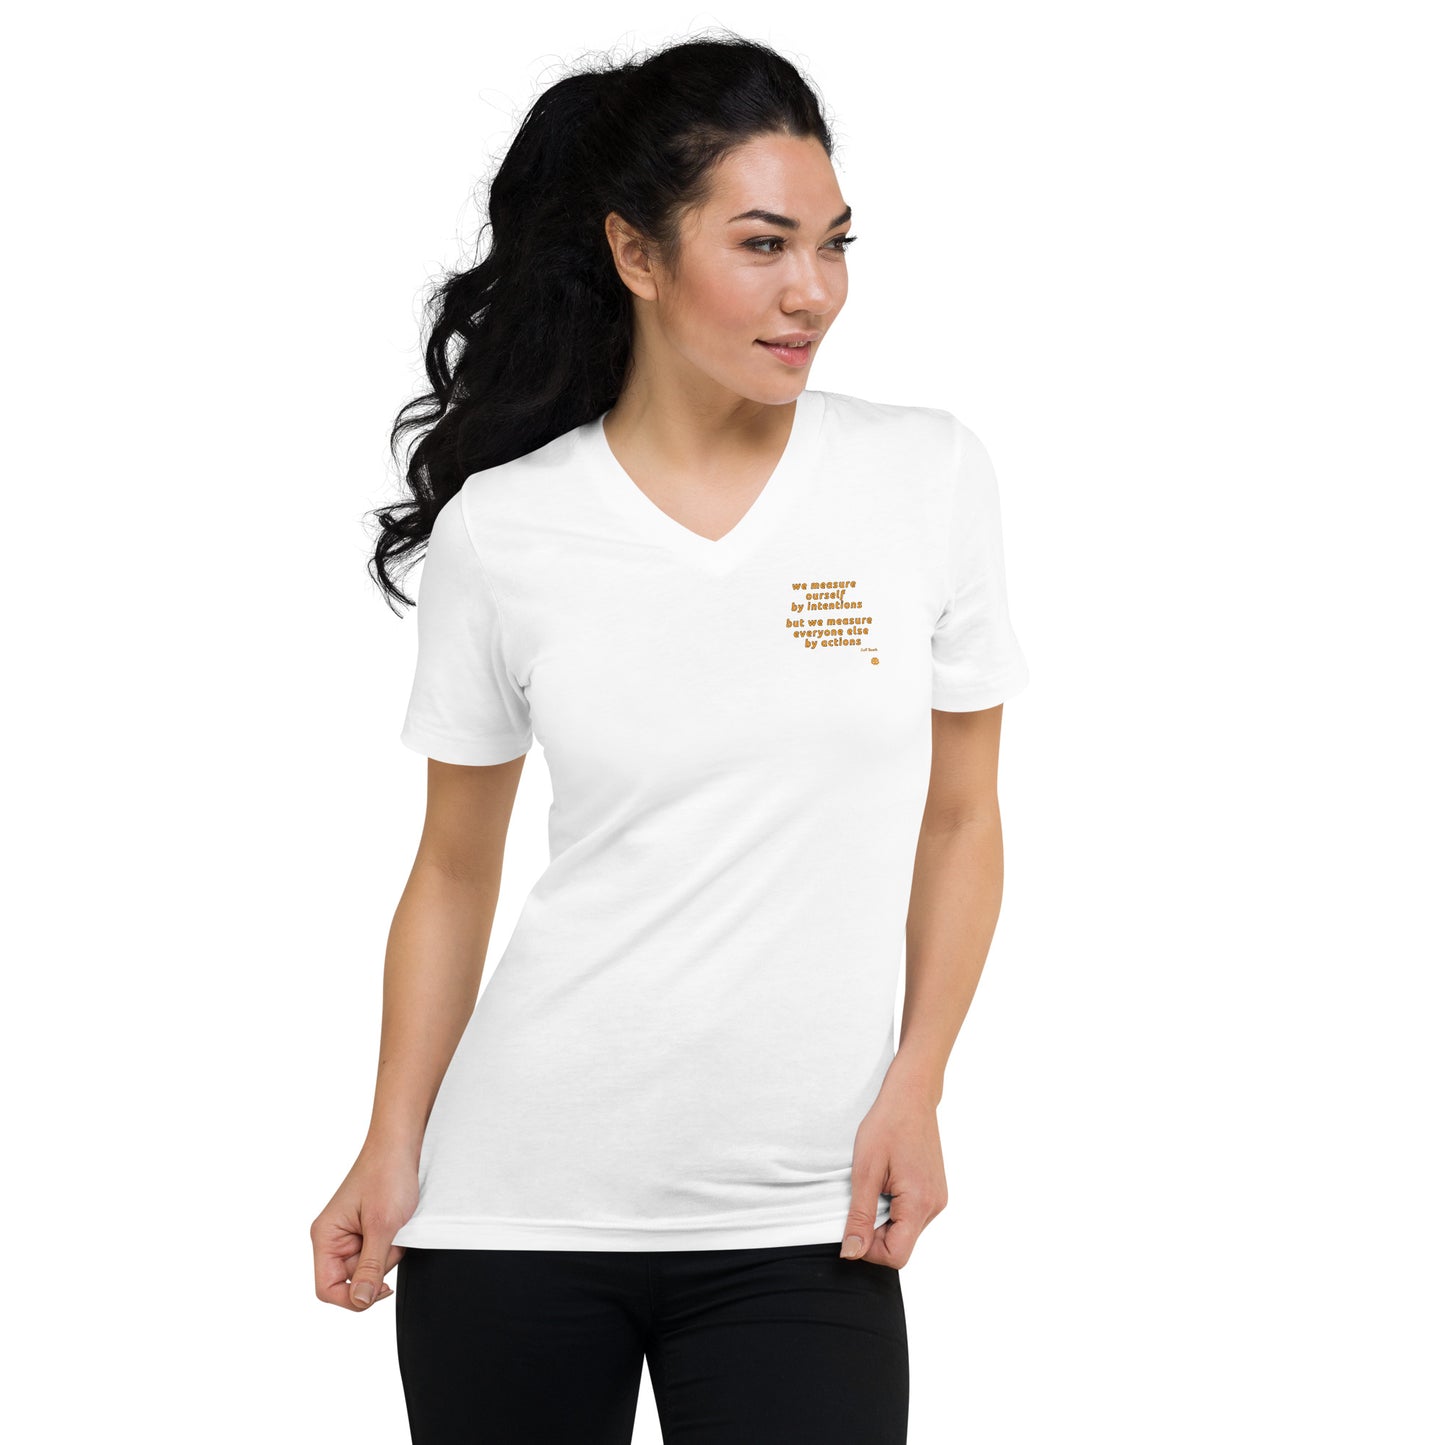 Women's Short Sleeve V-Neck T-Shirt "Measure_sm"